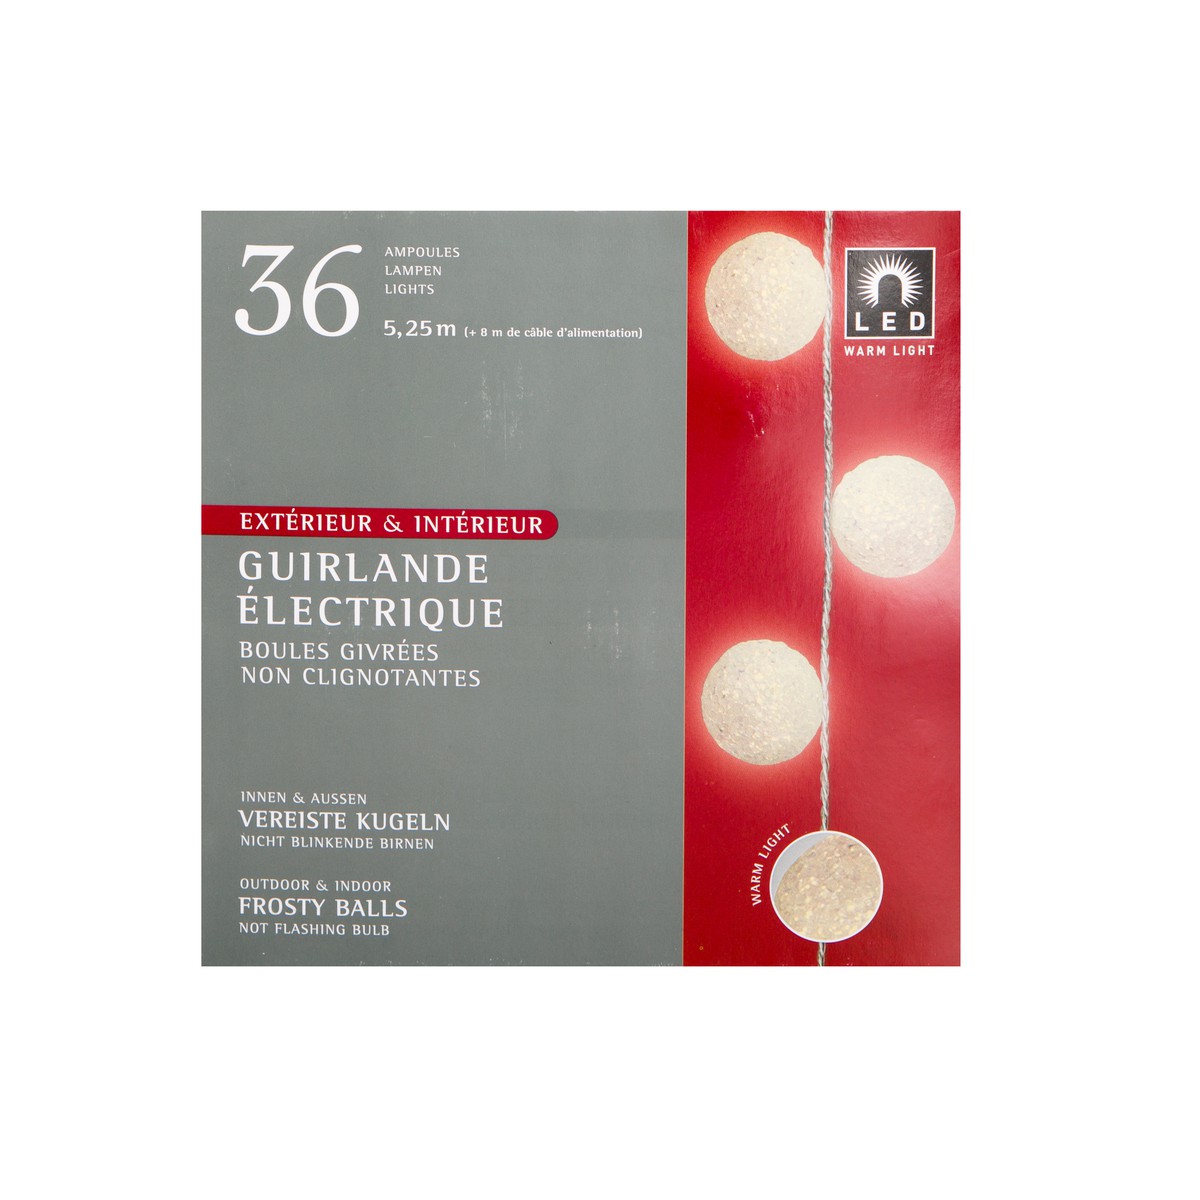   Guirlande Int./Ext. LED chaude Boules givrées 36L.  5.7m (+8m de cable d alimentation)